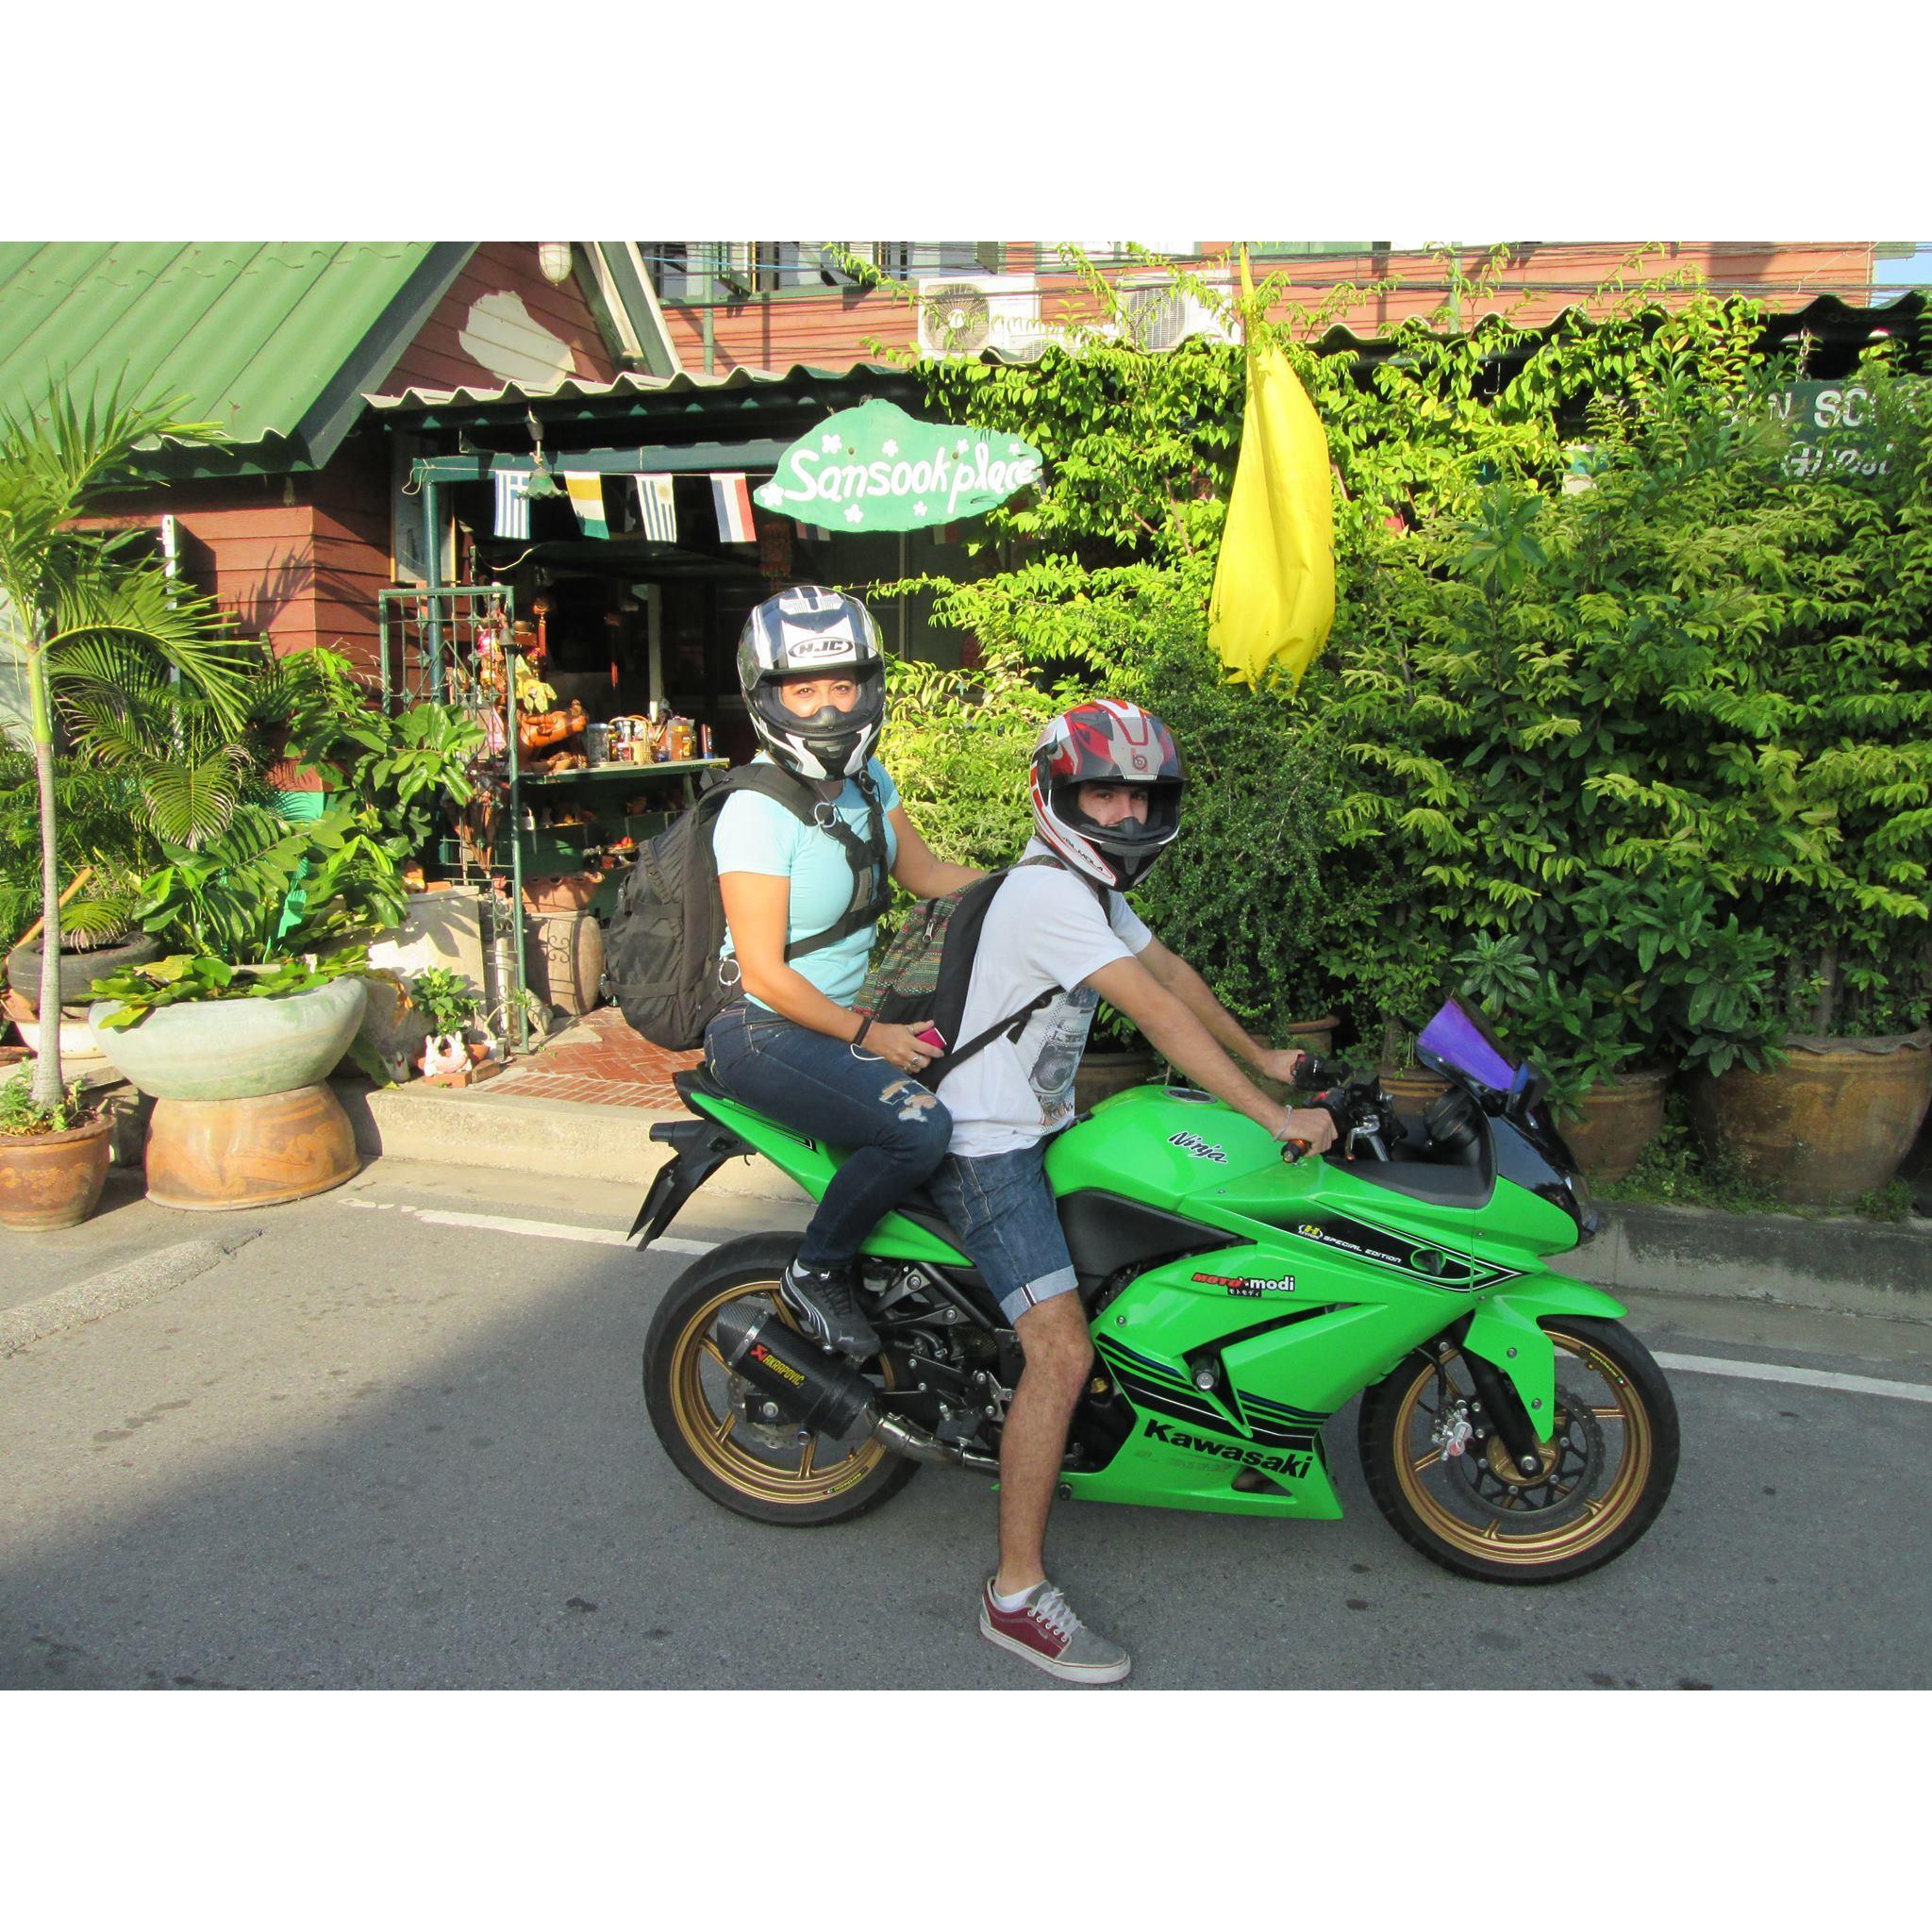 First motorbike trip, Ayutthaya Thailand